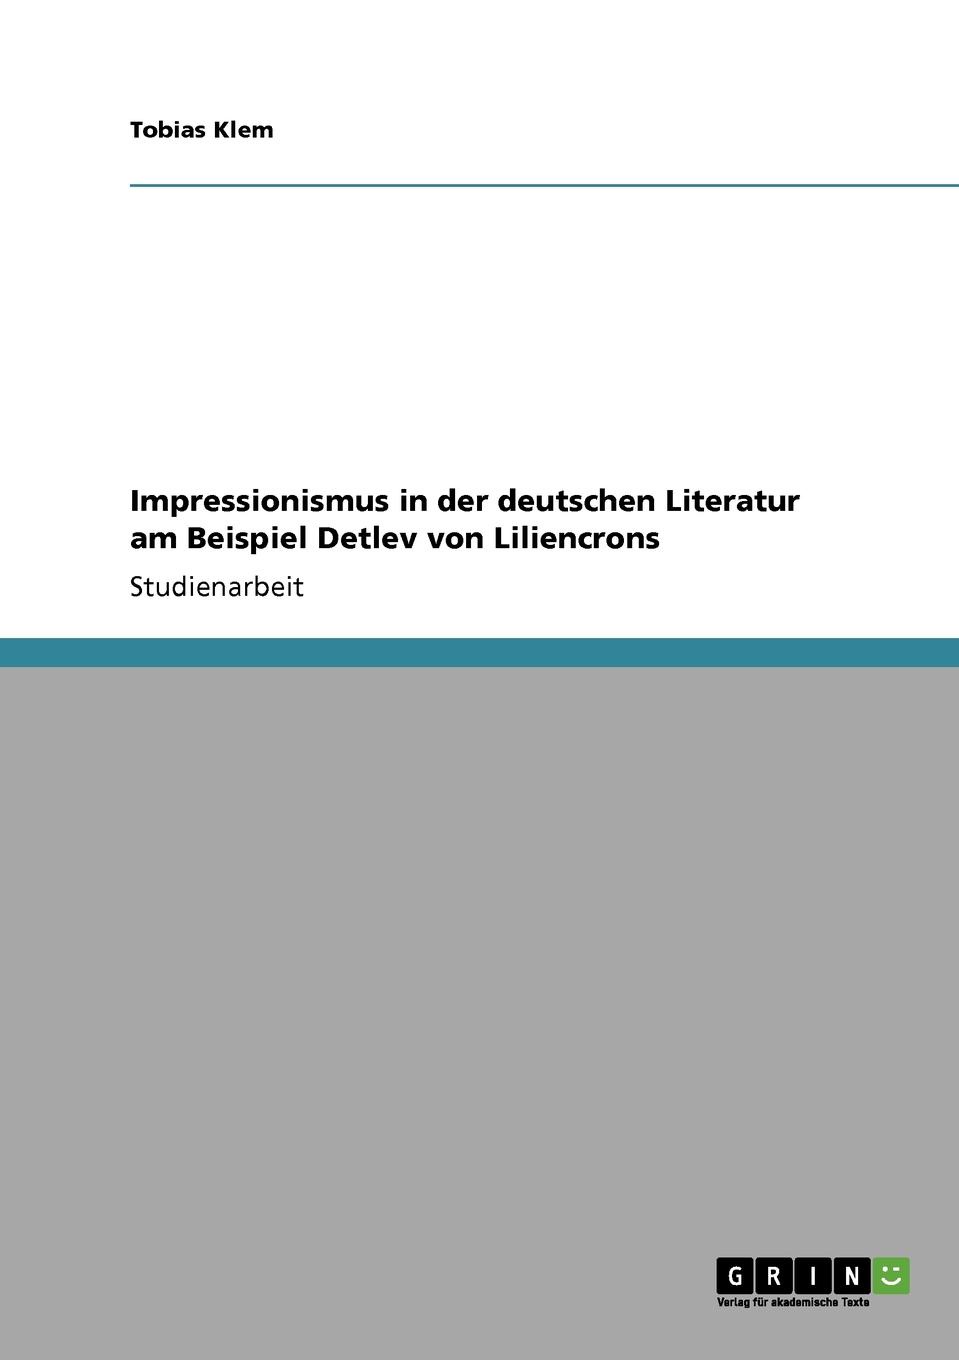 Impressionismus in der deutschen Literatur am Beispiel Detlev von Liliencrons